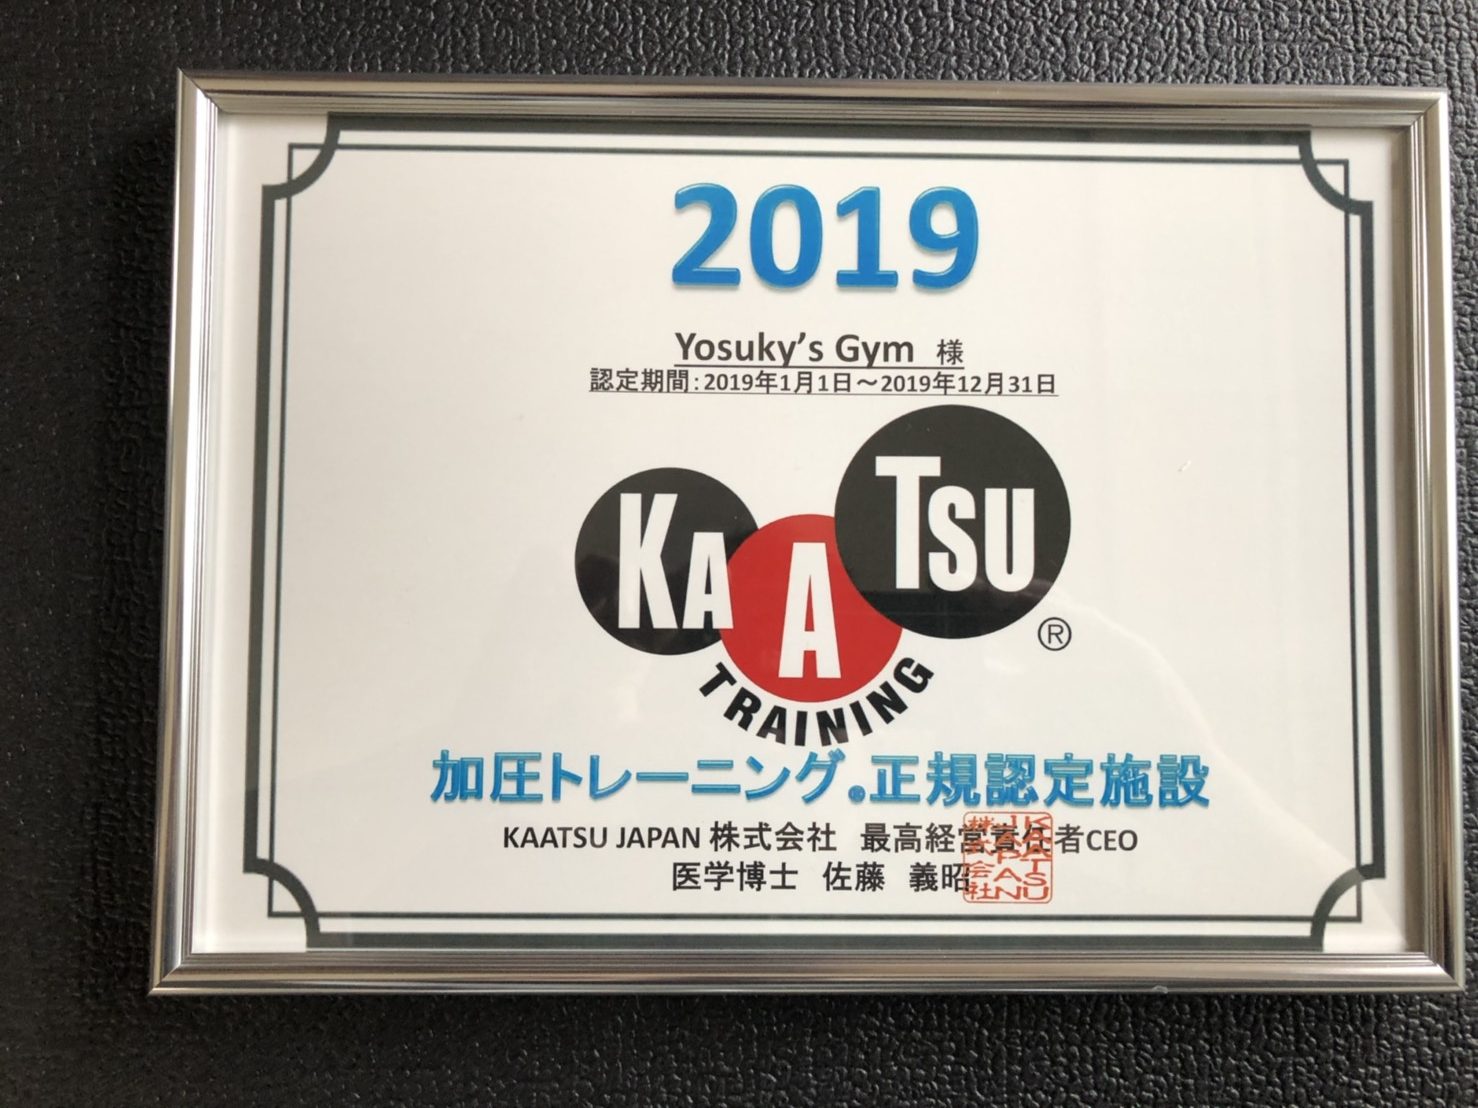 Personal & Kaatsu Training Yosuky’s Gymの施設画像